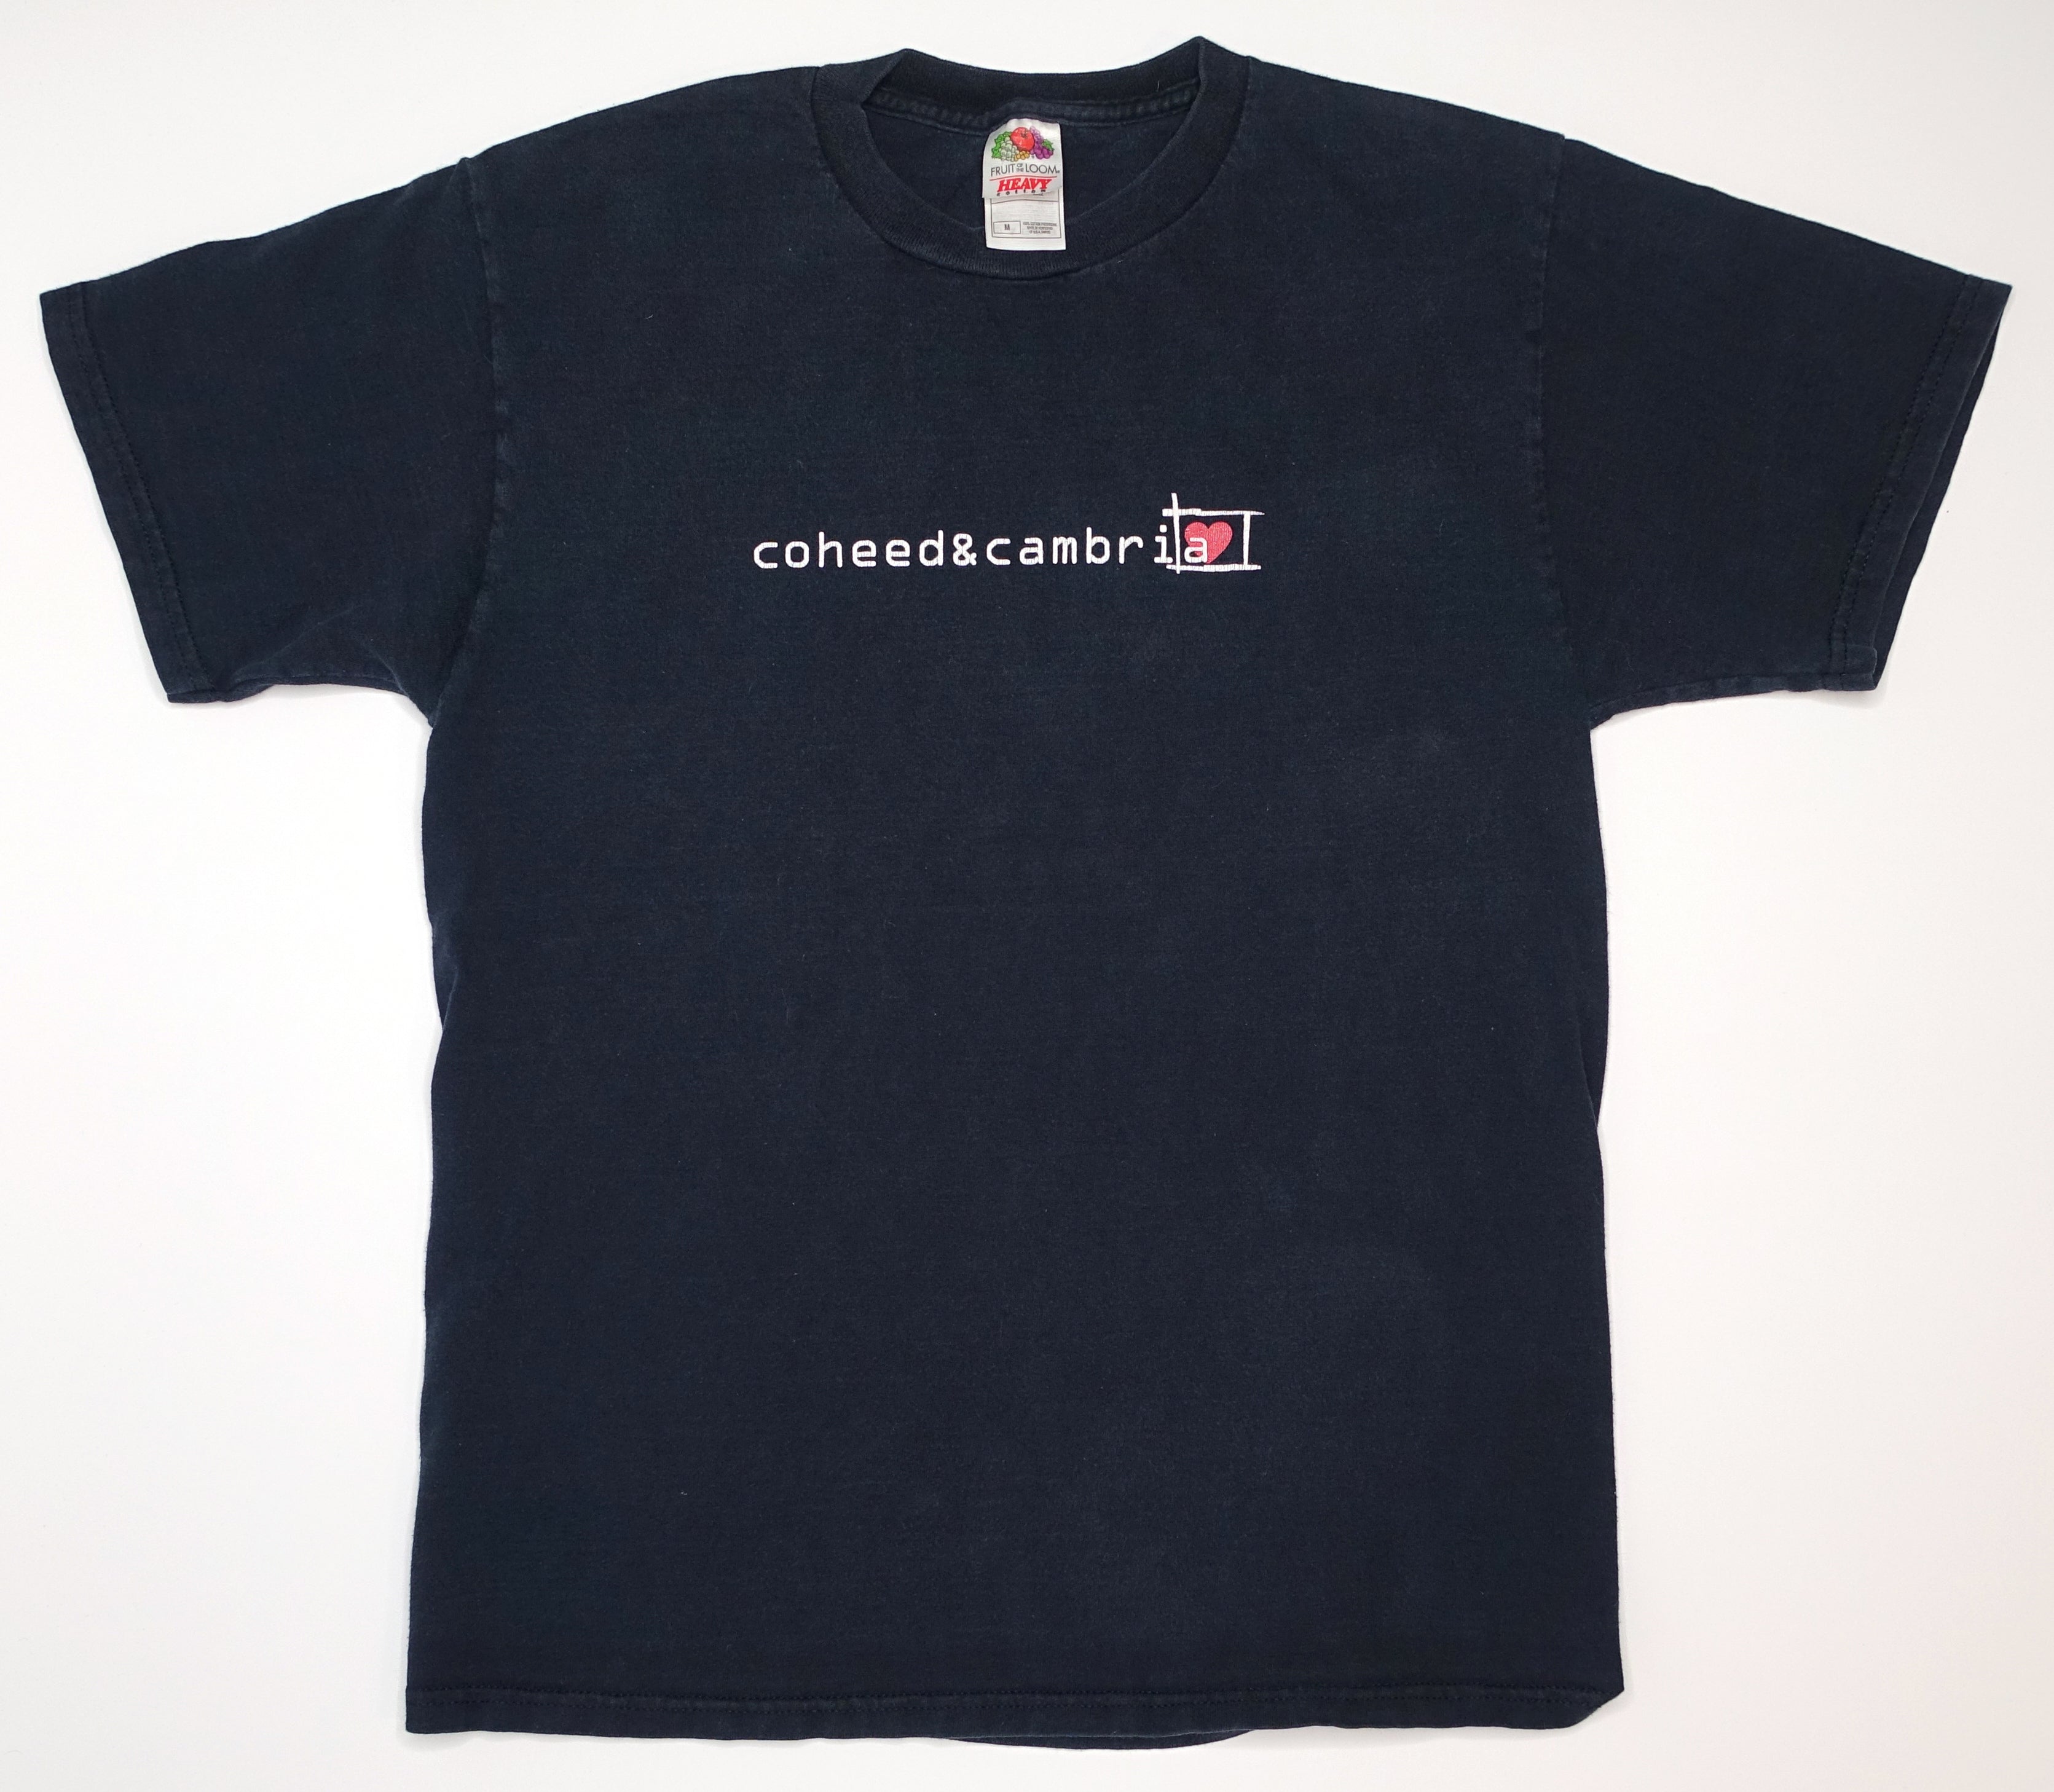 Coheed & Cambria – Heart 2000's Tour Shirt Size Medium